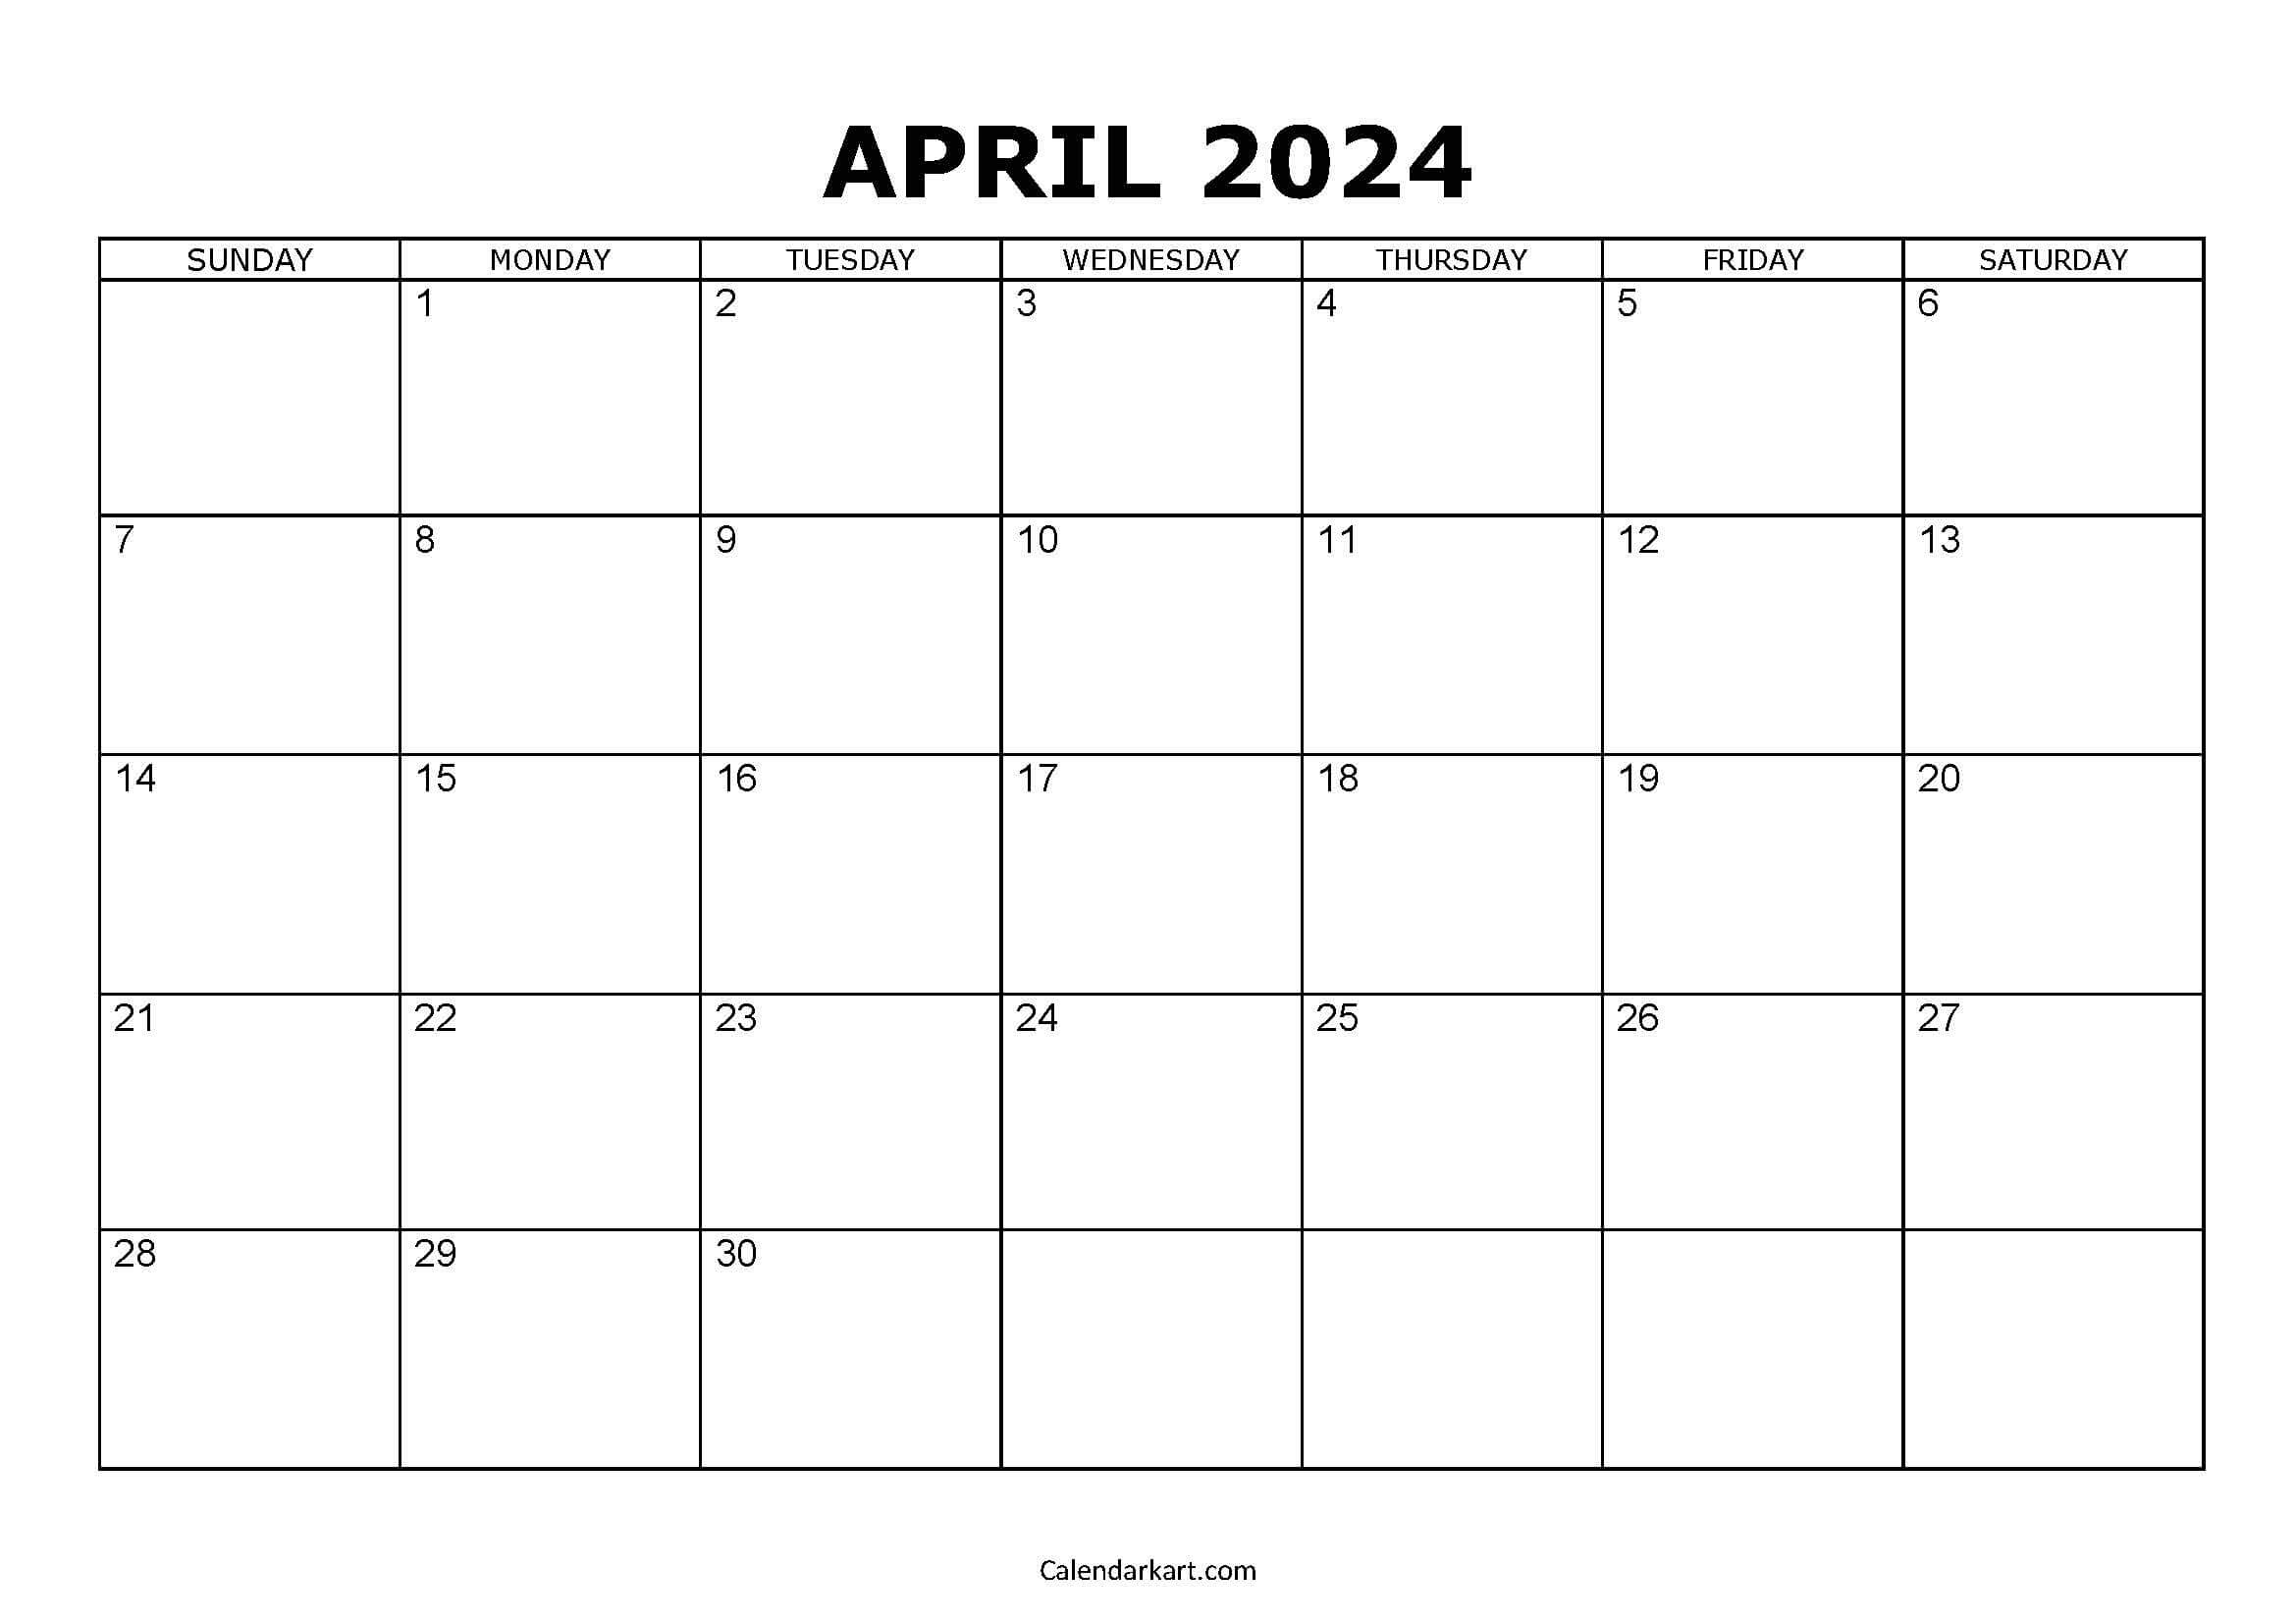 Download Free Printable April 2024 Calendar - Calendarkart for Free Printable Calendar April2024